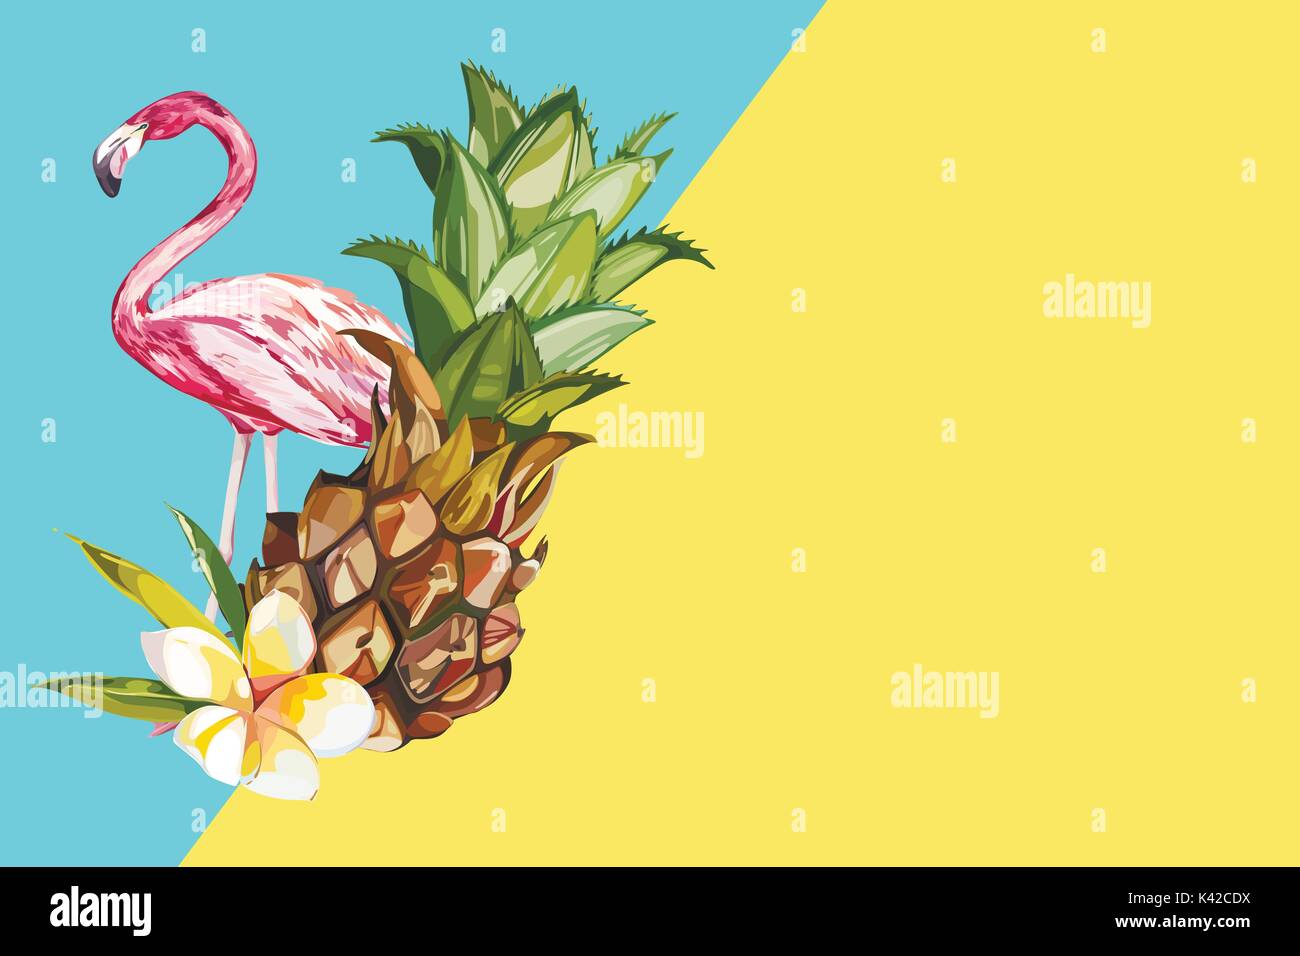 L'ananas avec des fleurs tropicales et Flamingo. Pour l'élément de conception des invitations, affiches, tissus et autres objets. Isolé sur blanc. Vector EPS 10 Illustration de Vecteur